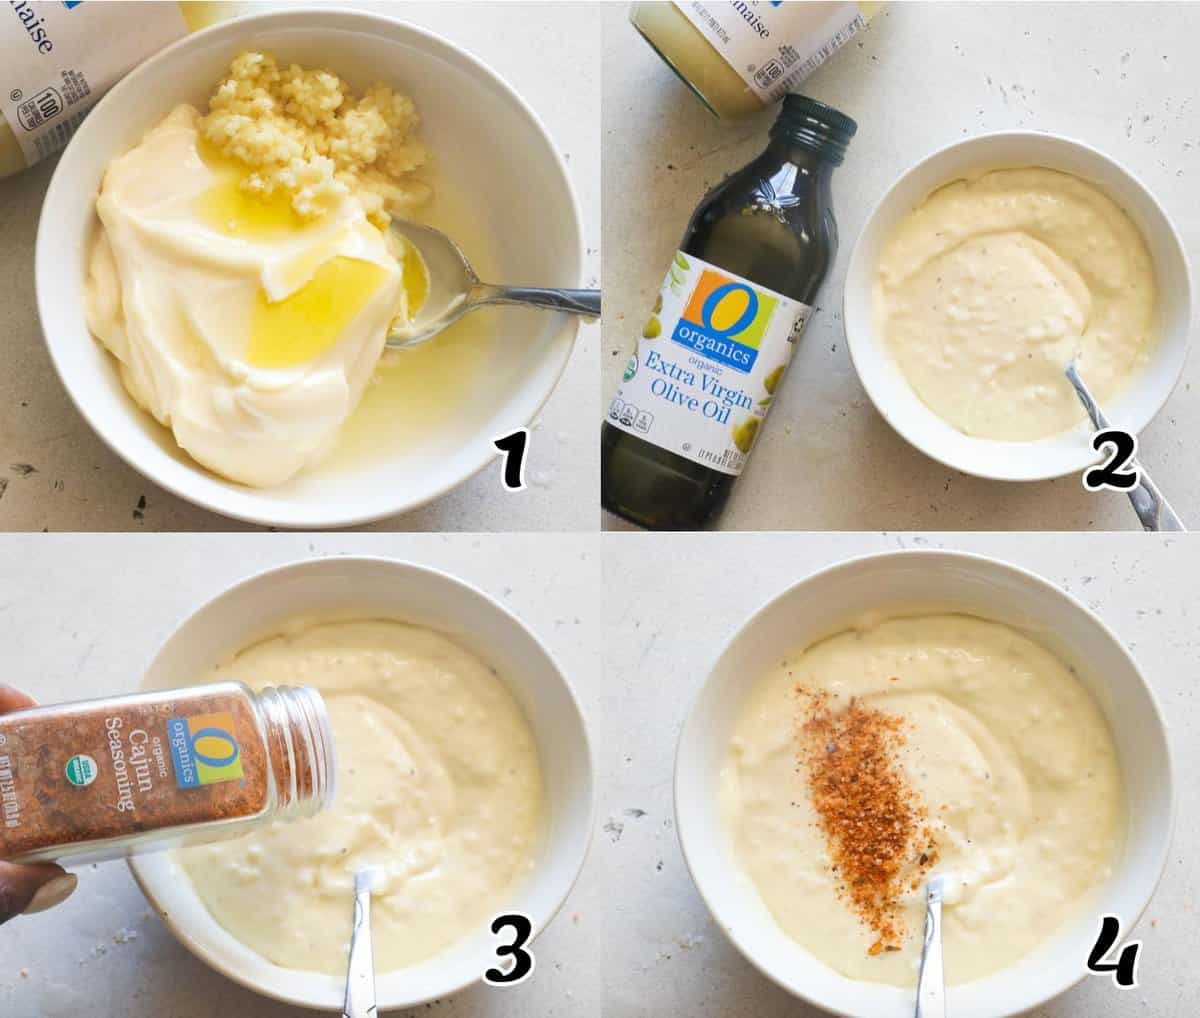 Mixing the mayonnaise and seasonings